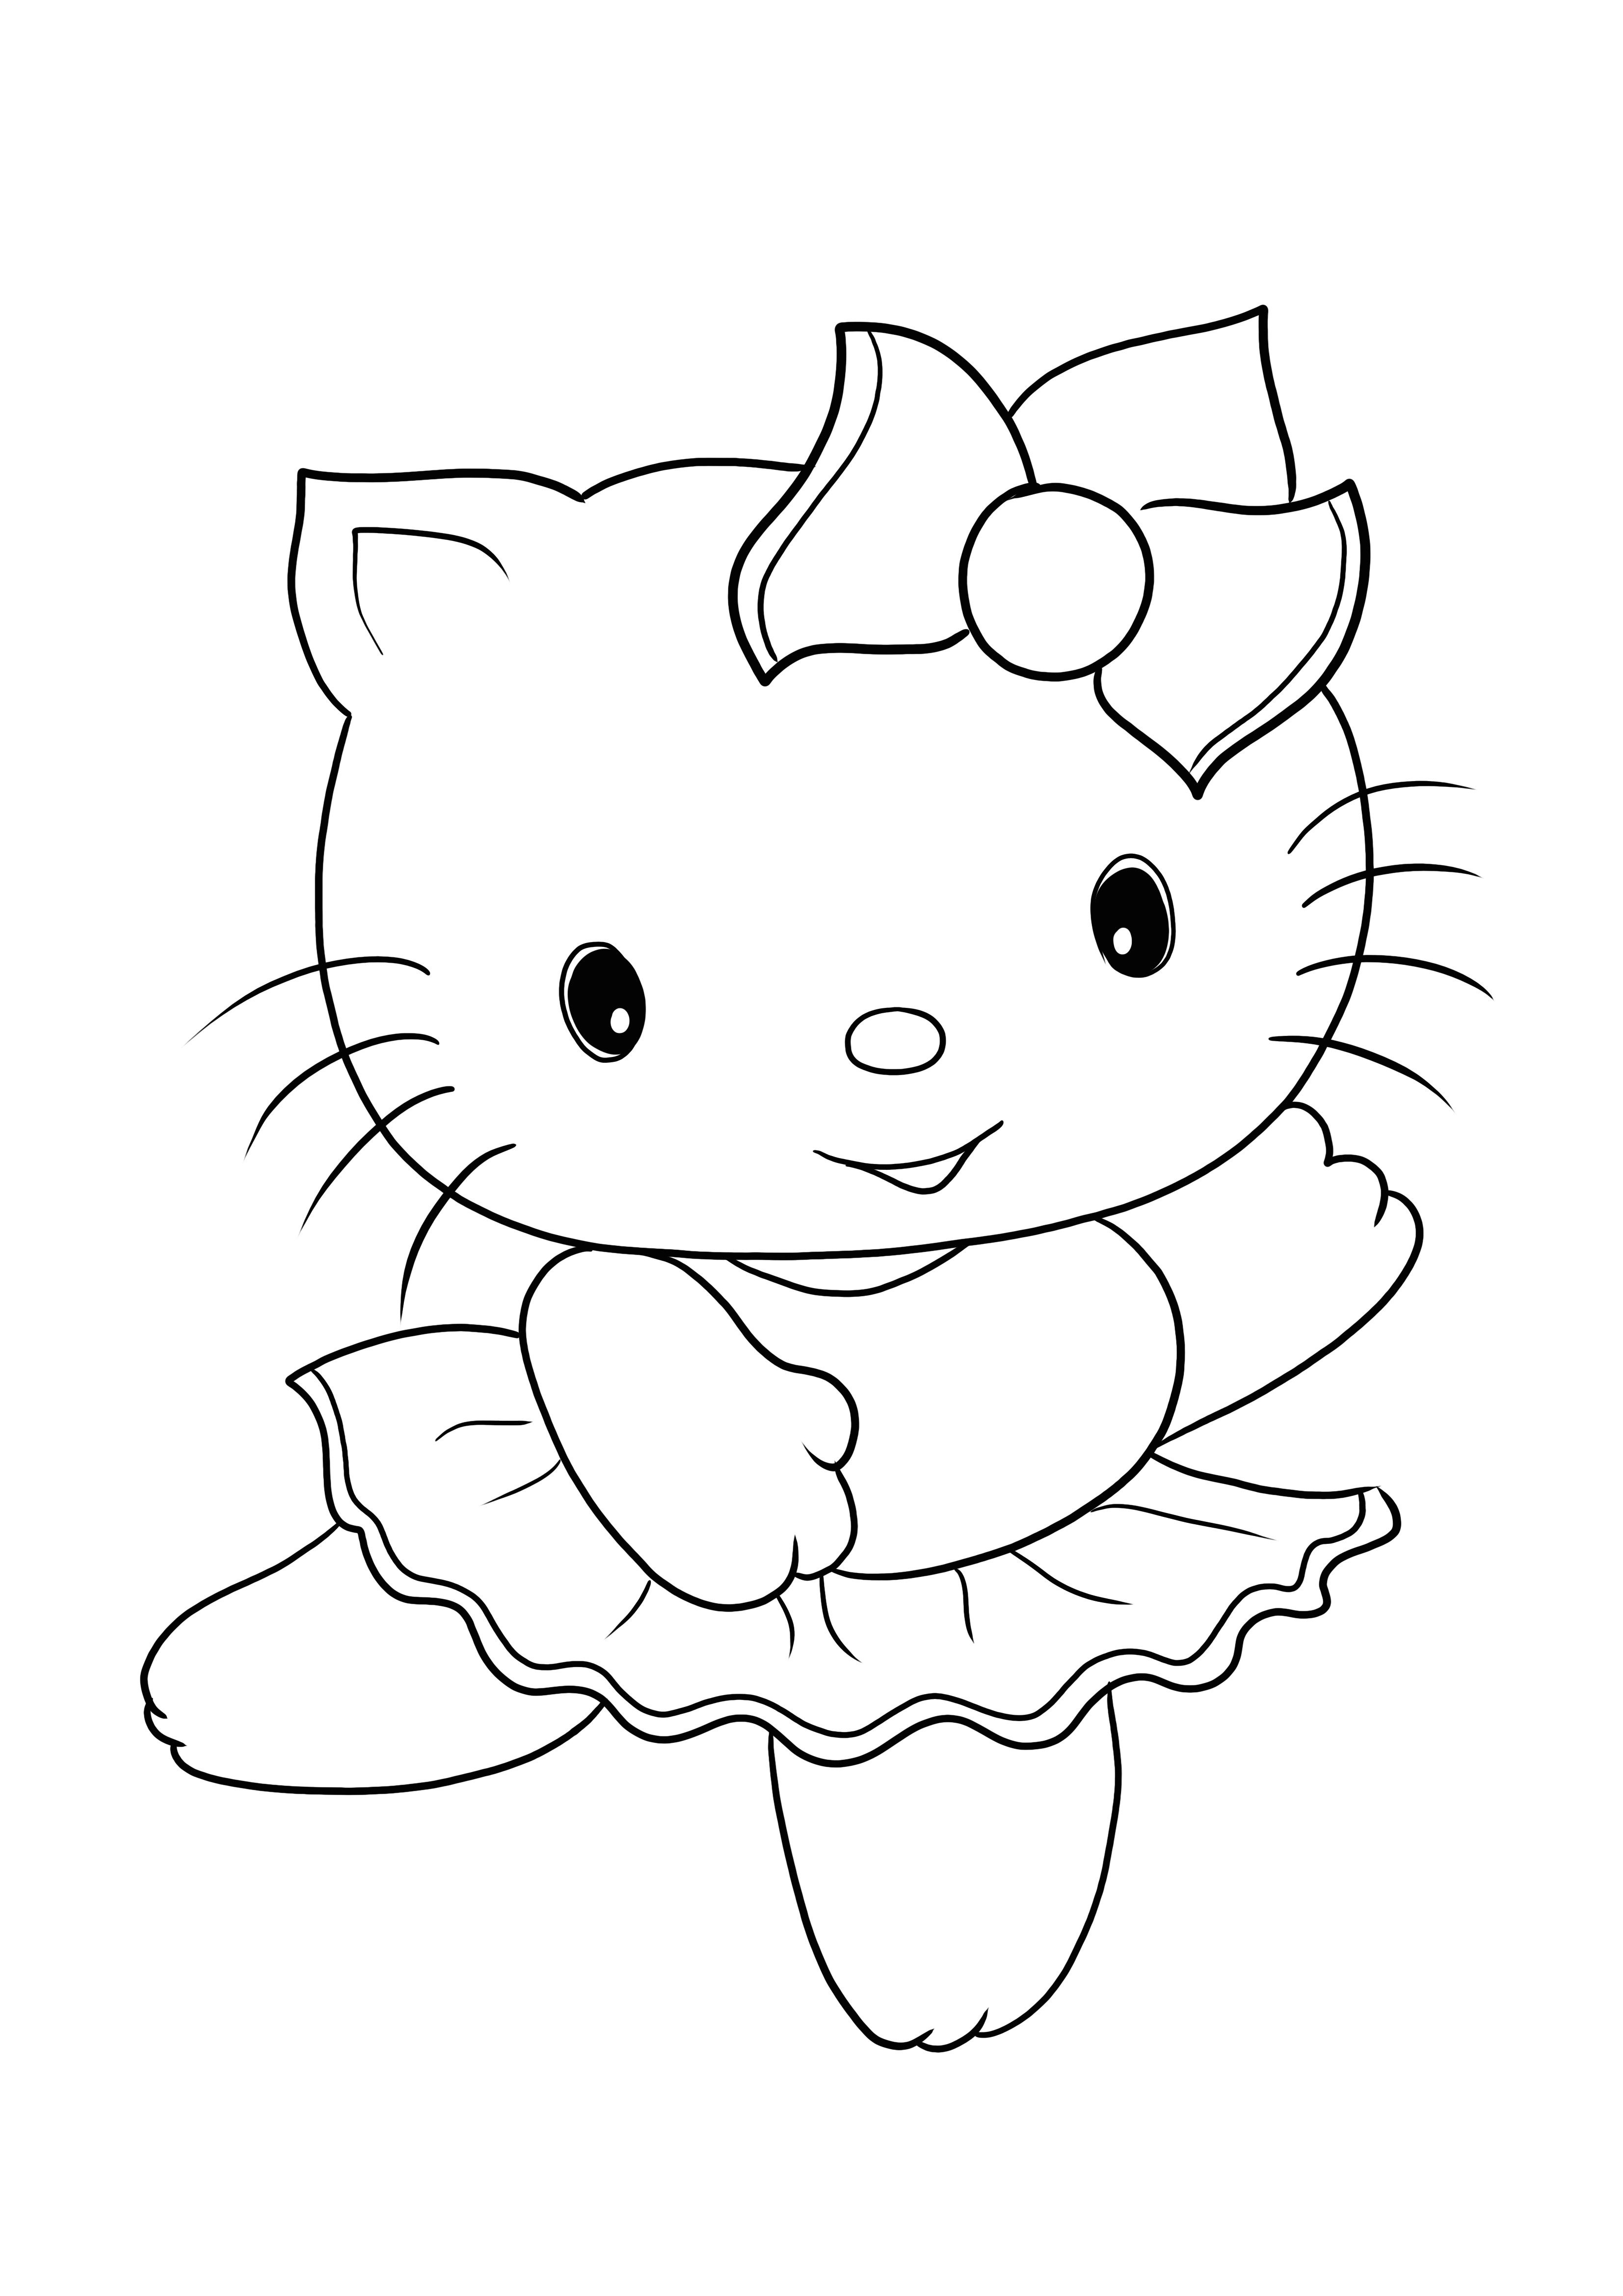 Stampa e colorazione gratuite della simpatica immagine di Hello Kitty per tutte le età